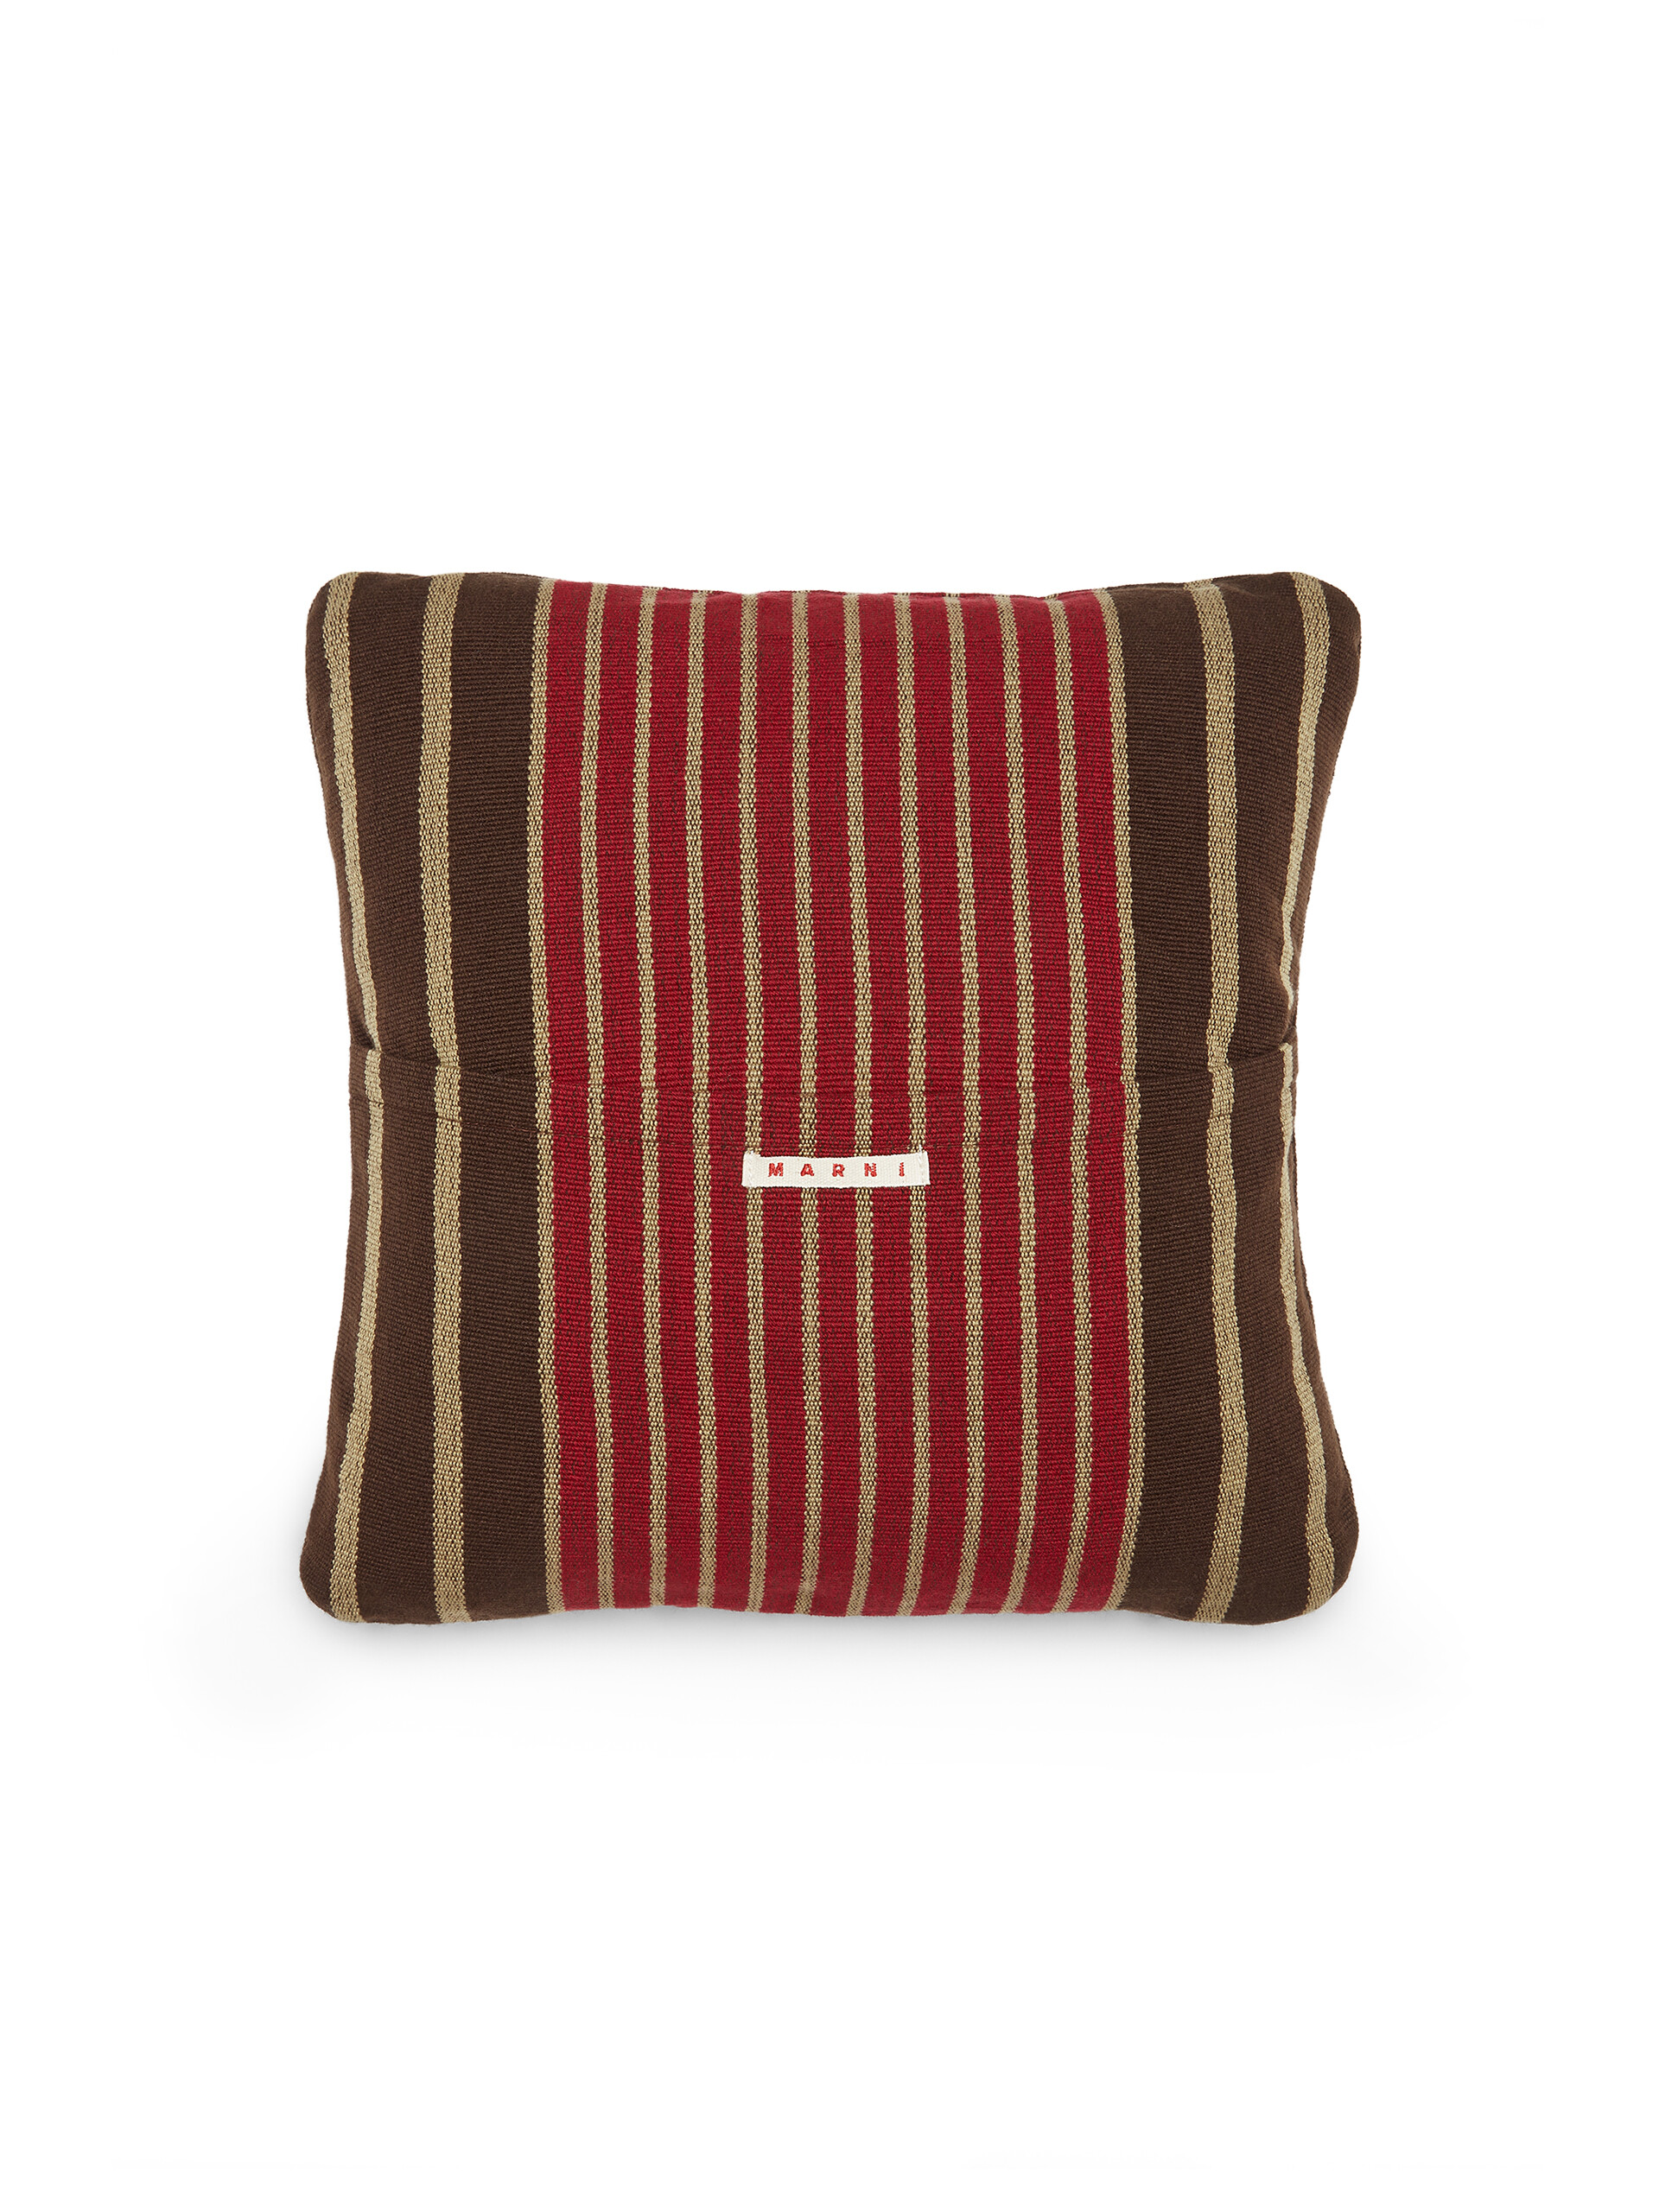 Fodera per cuscino quadrata MARNI MARKET in poliestere rosso marrone e beige - Arredamento - Image 2